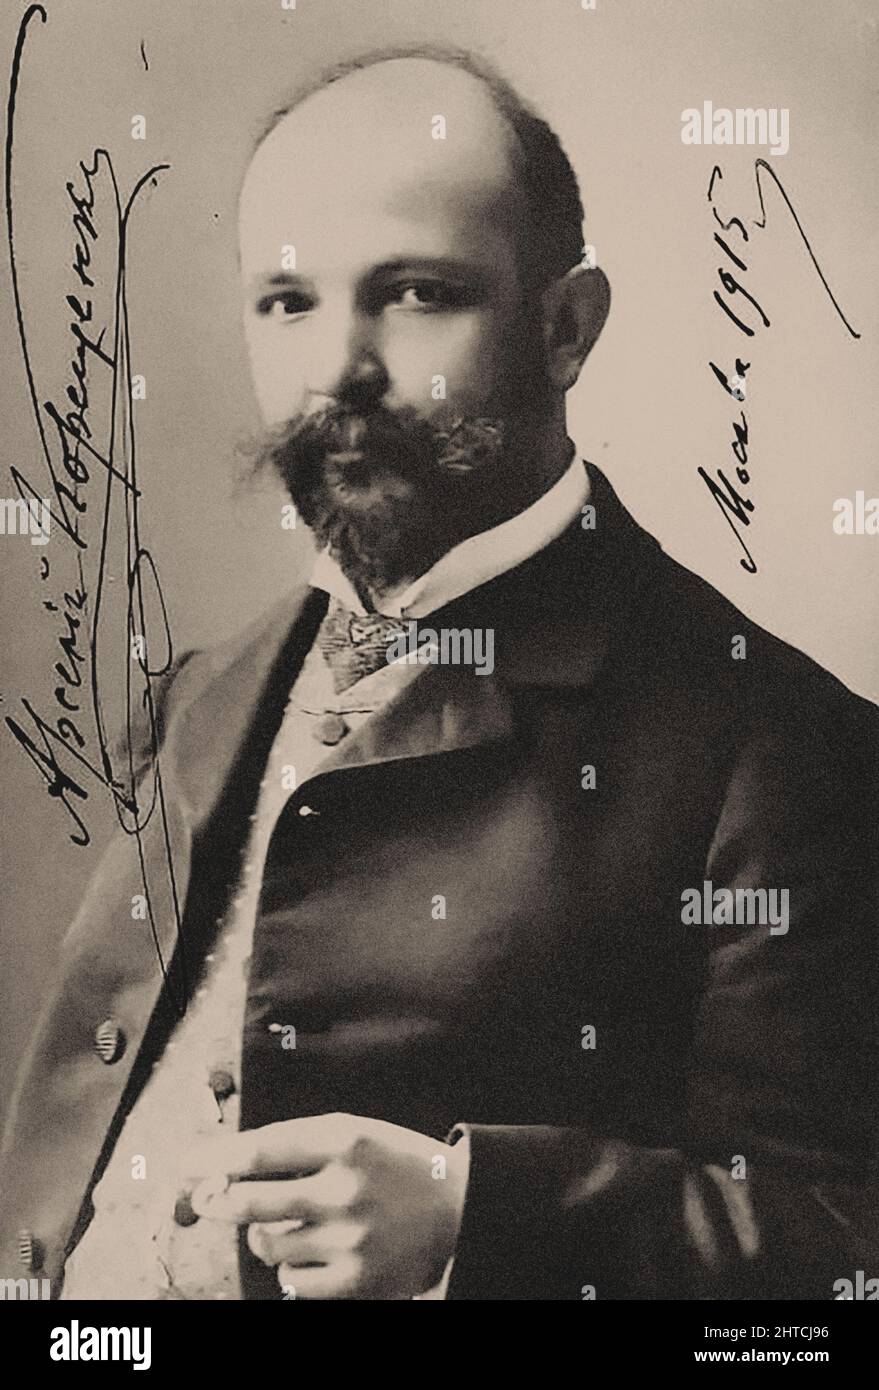 Porträt des Pianisten und Komponisten Arseni Nikolajewitsch Koreschtschenko (1870-1921), 1910s. Private Sammlung. Stockfoto